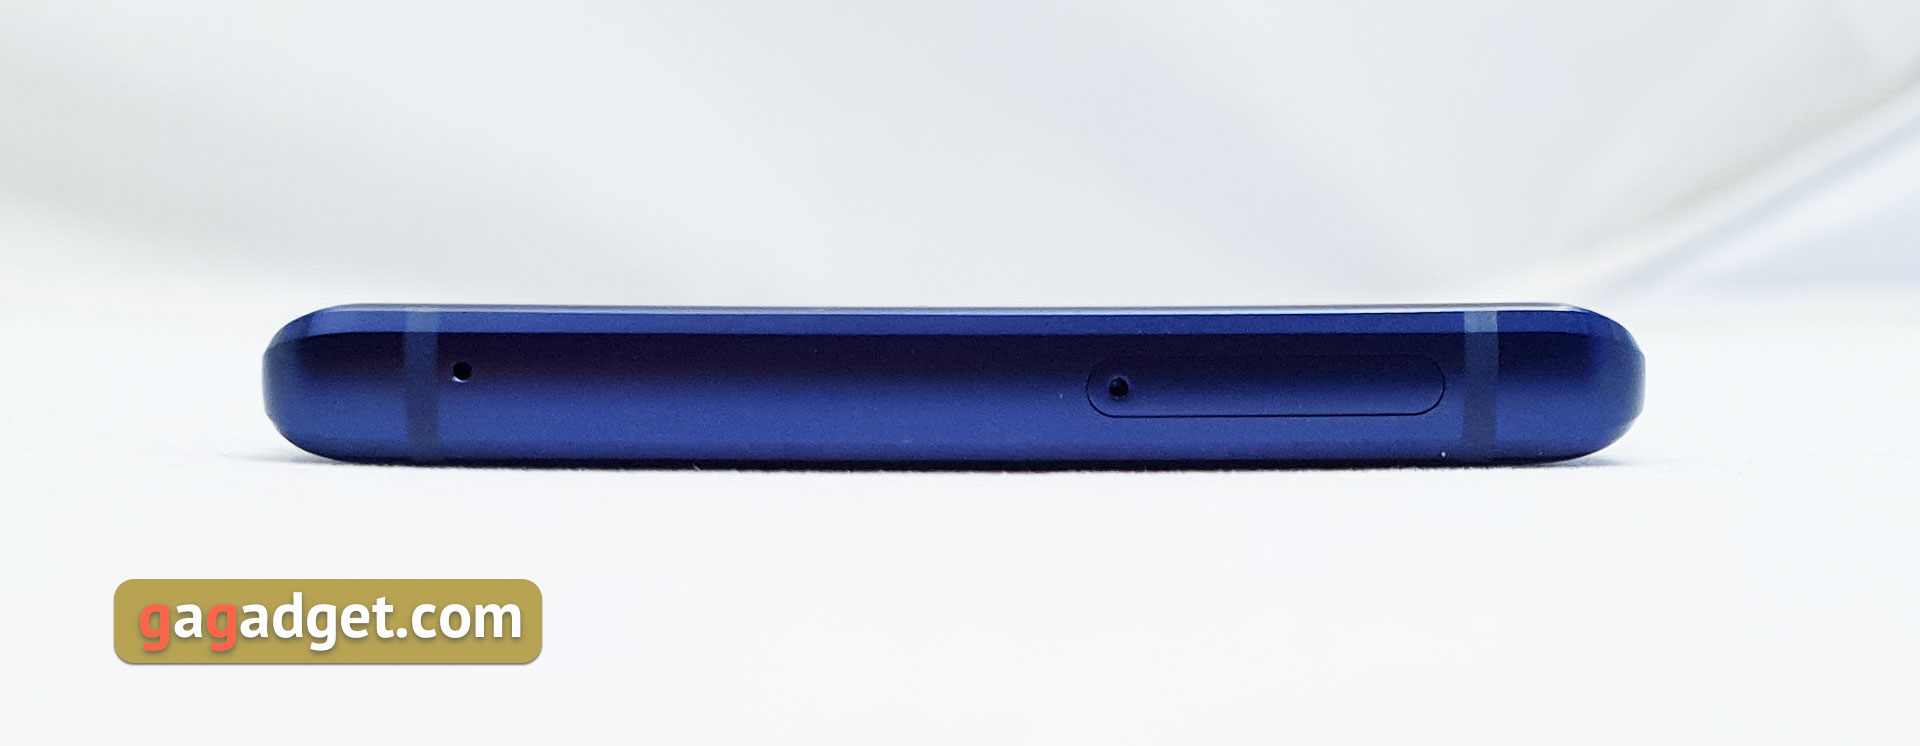 Обзор Samsung Galaxy Note9: максимум технологий и возможностей-14